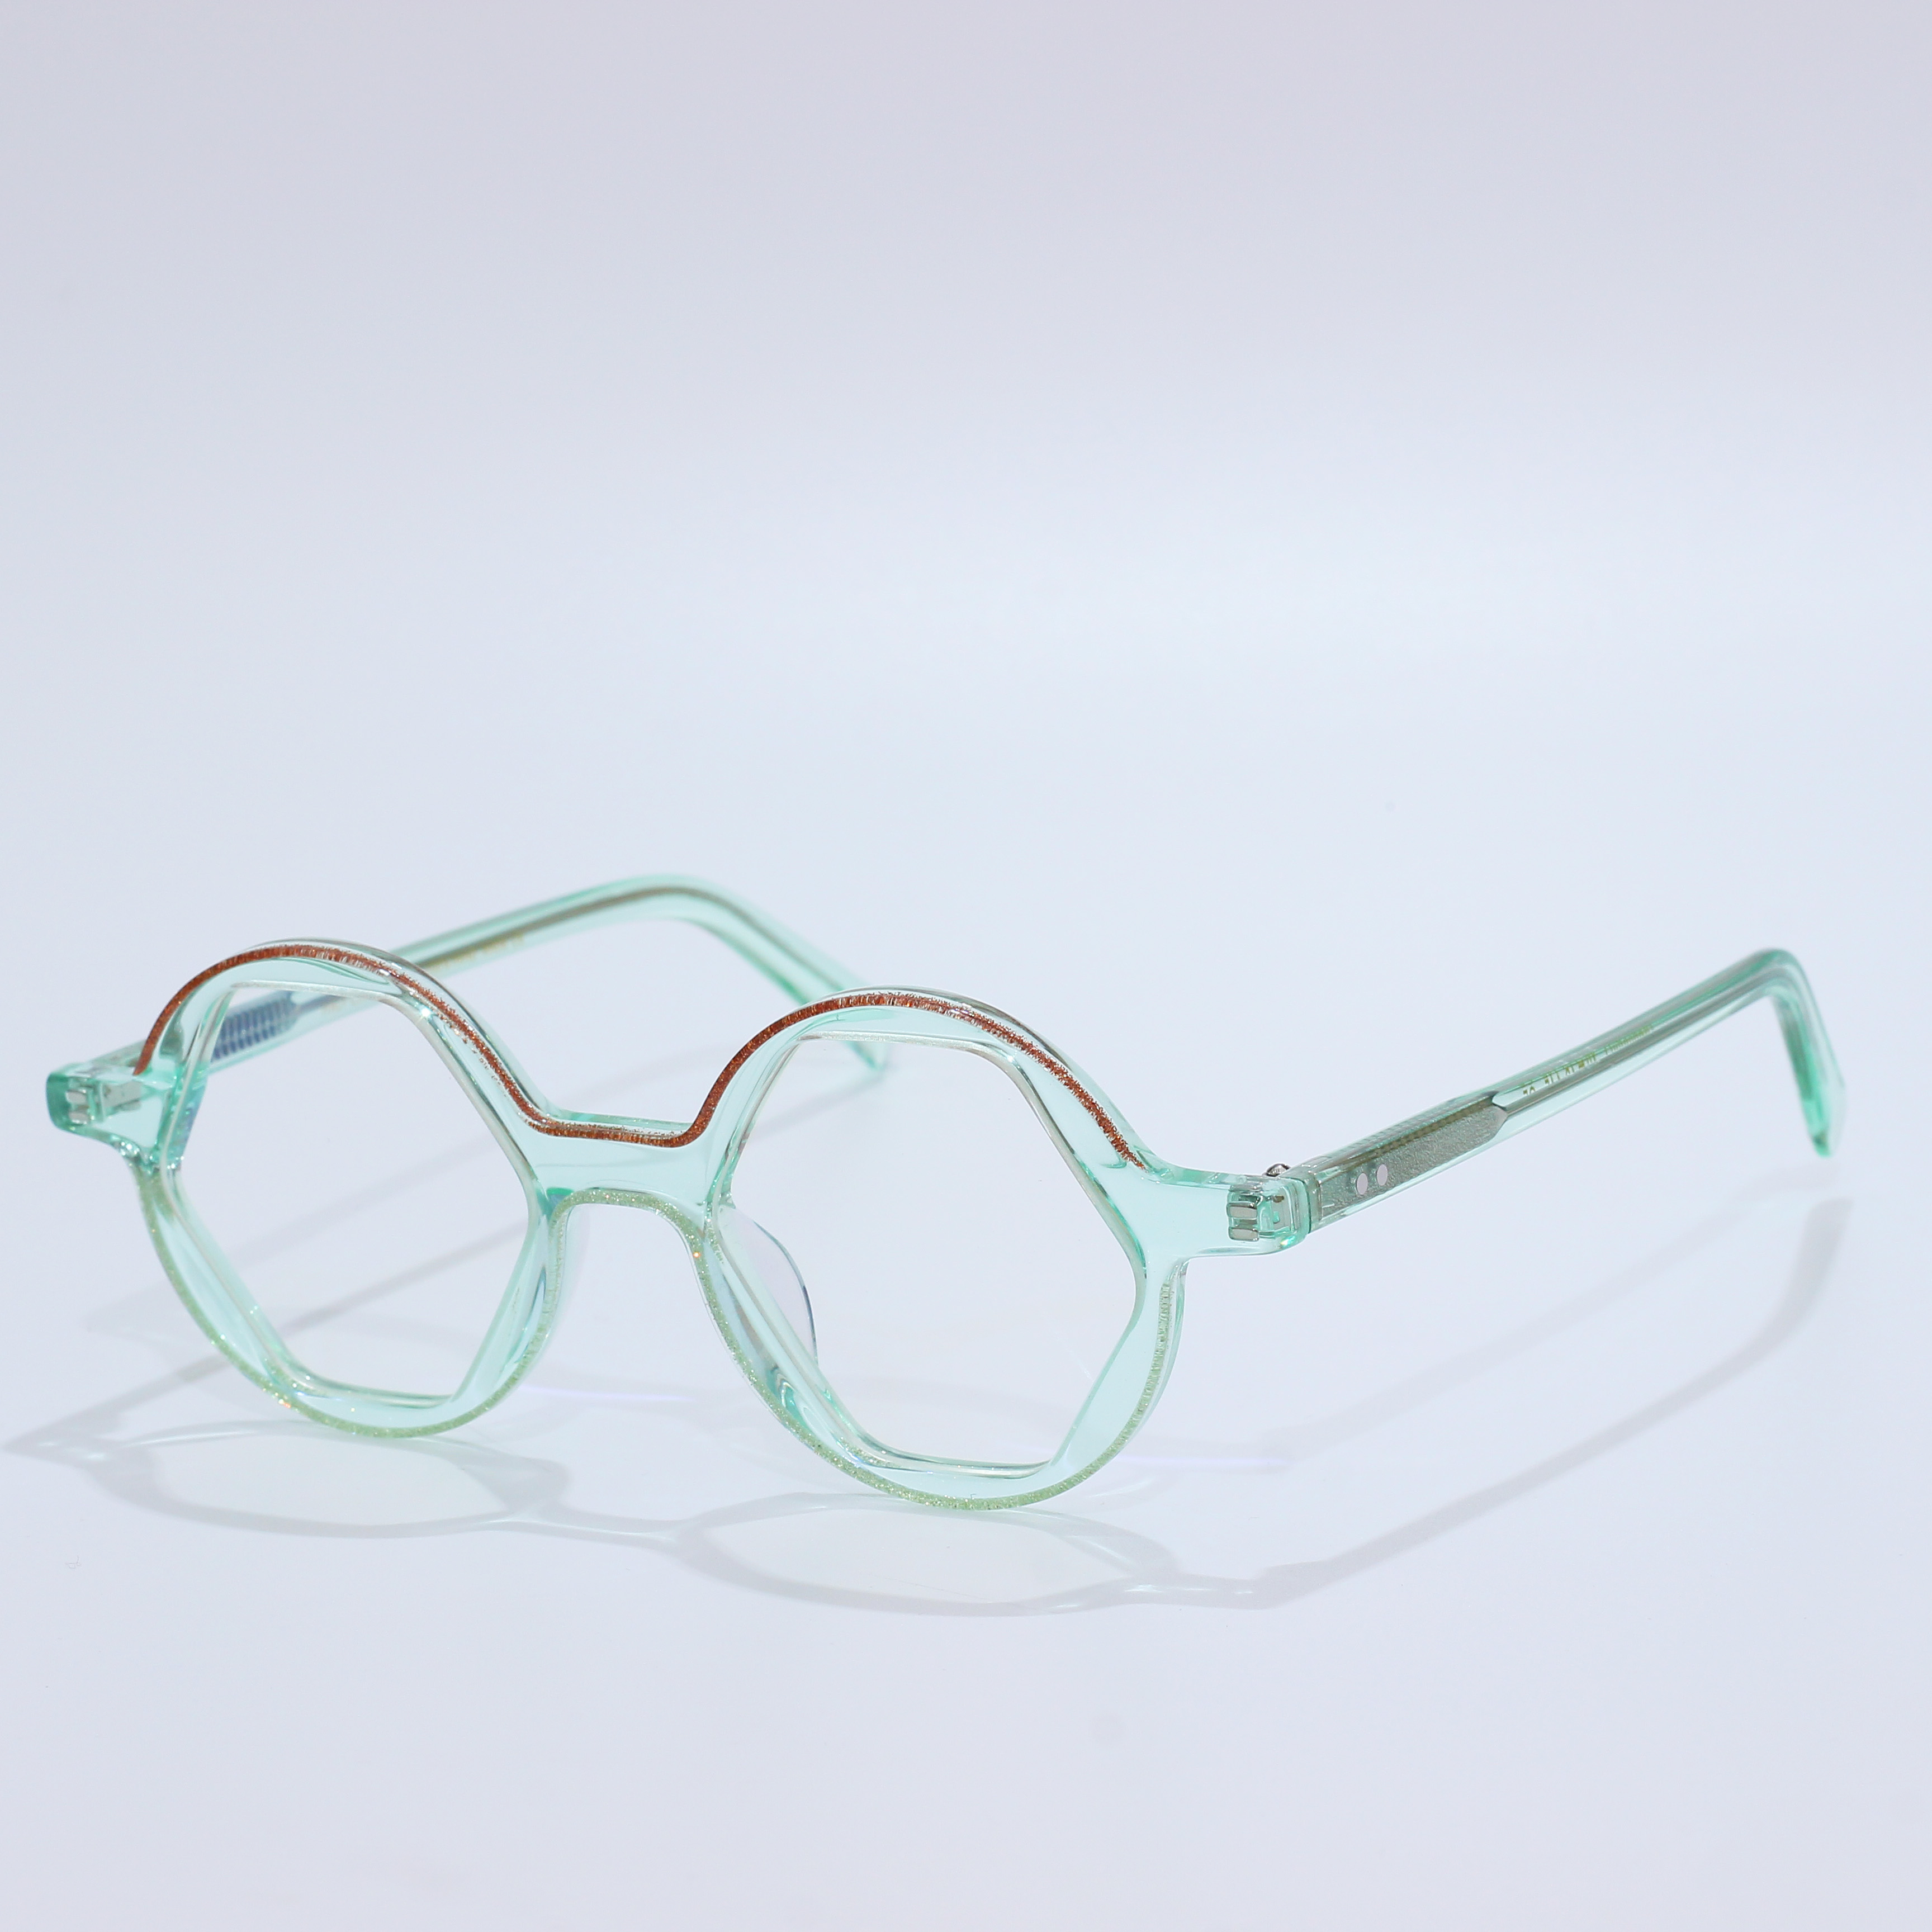 एसीटेट Mazzucchelli ब्लू लाइट चश्मा चश्मा फ्रेम (7)